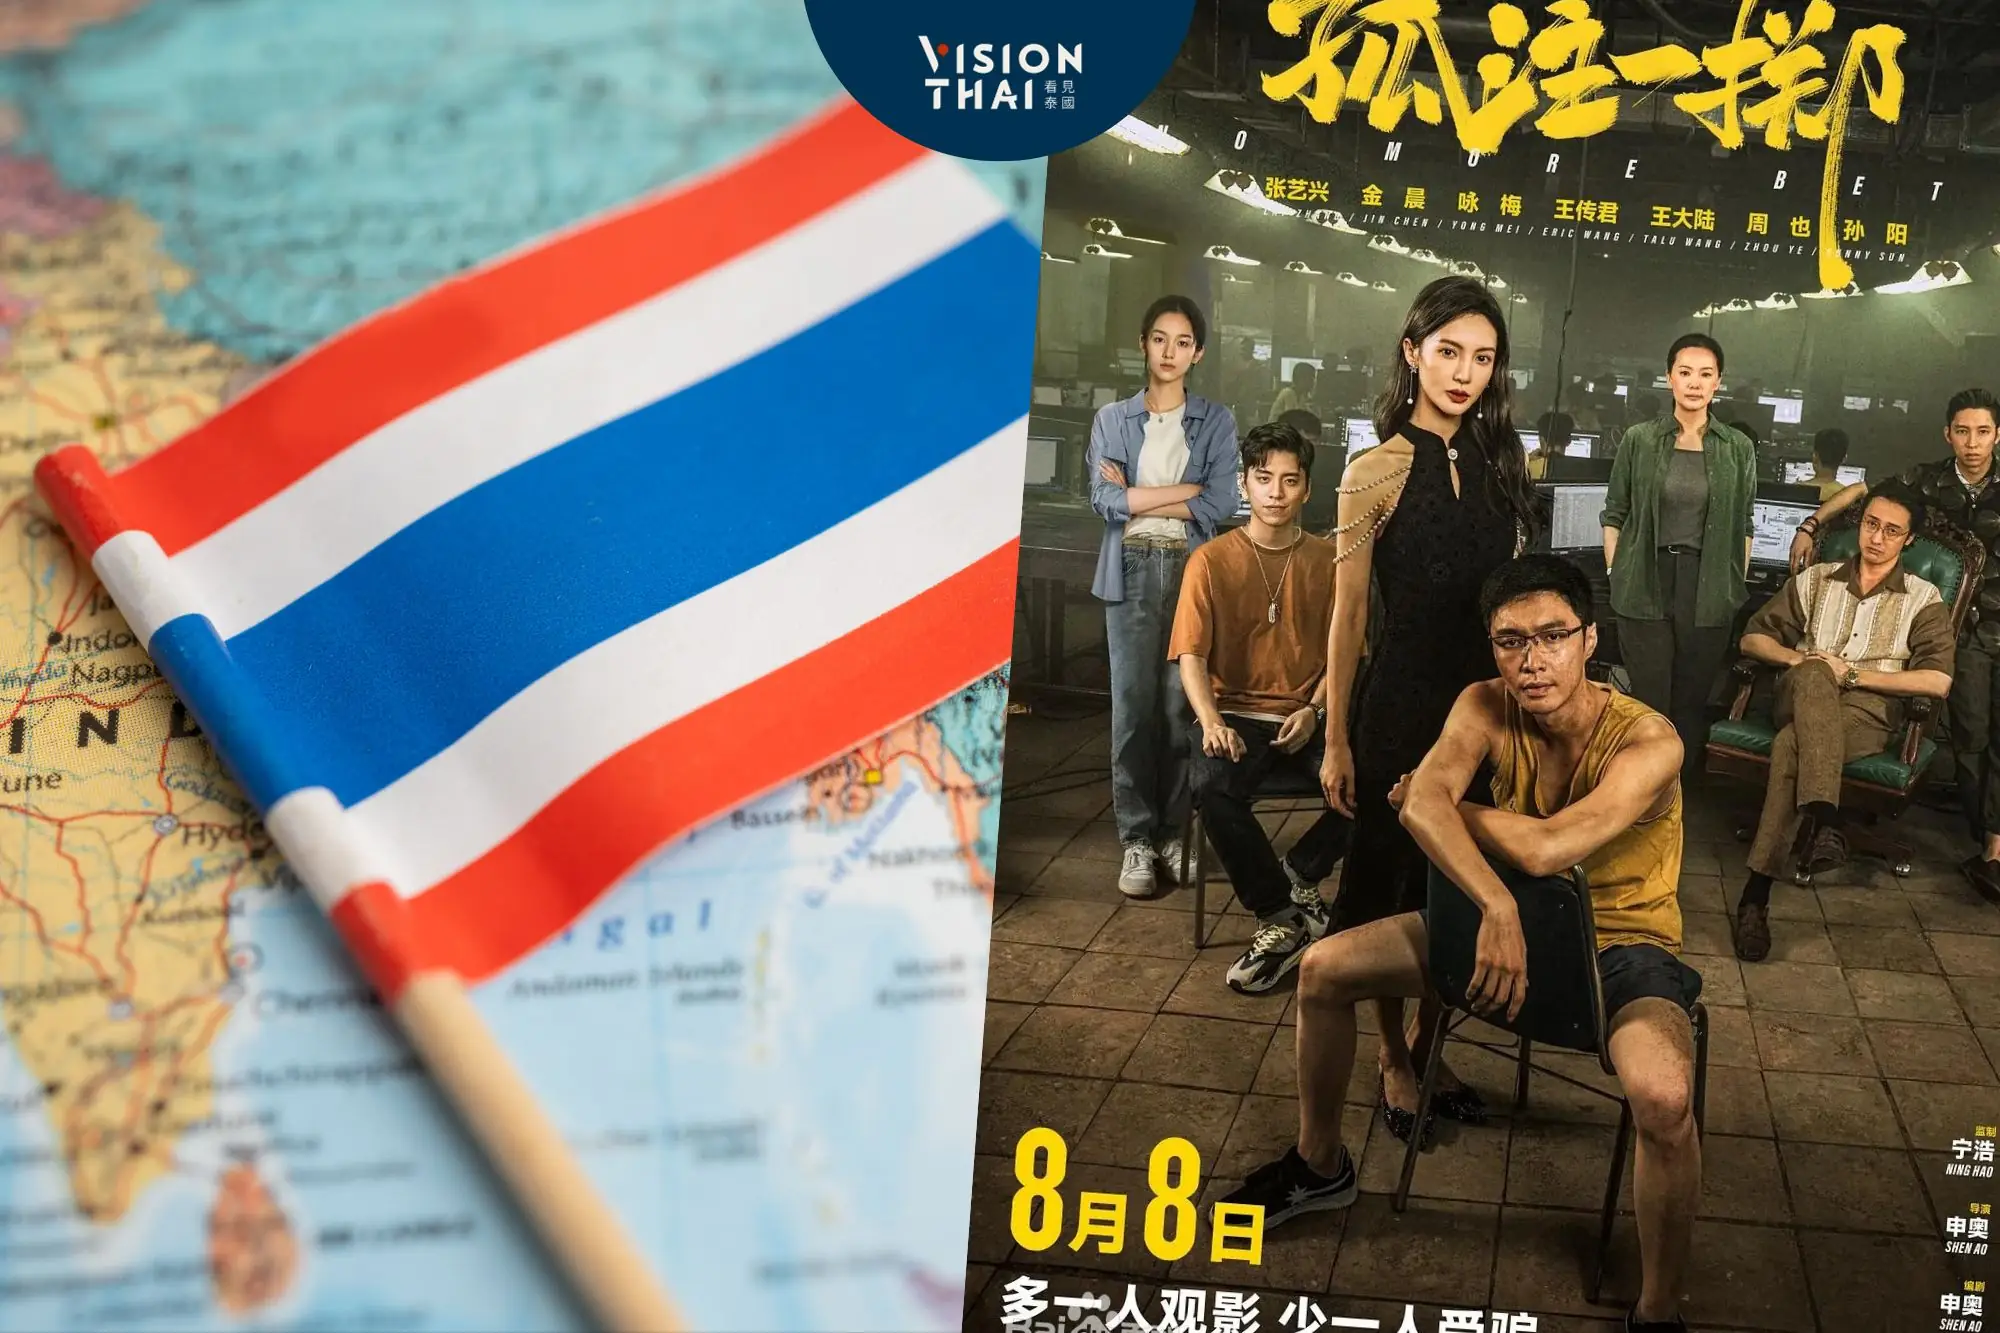 中國人不敢到泰國旅遊怕“割腰子” 電影《孤注一擲》影響大！當局急闢謠（圖片來源：孤注一擲百度、網路合圖）